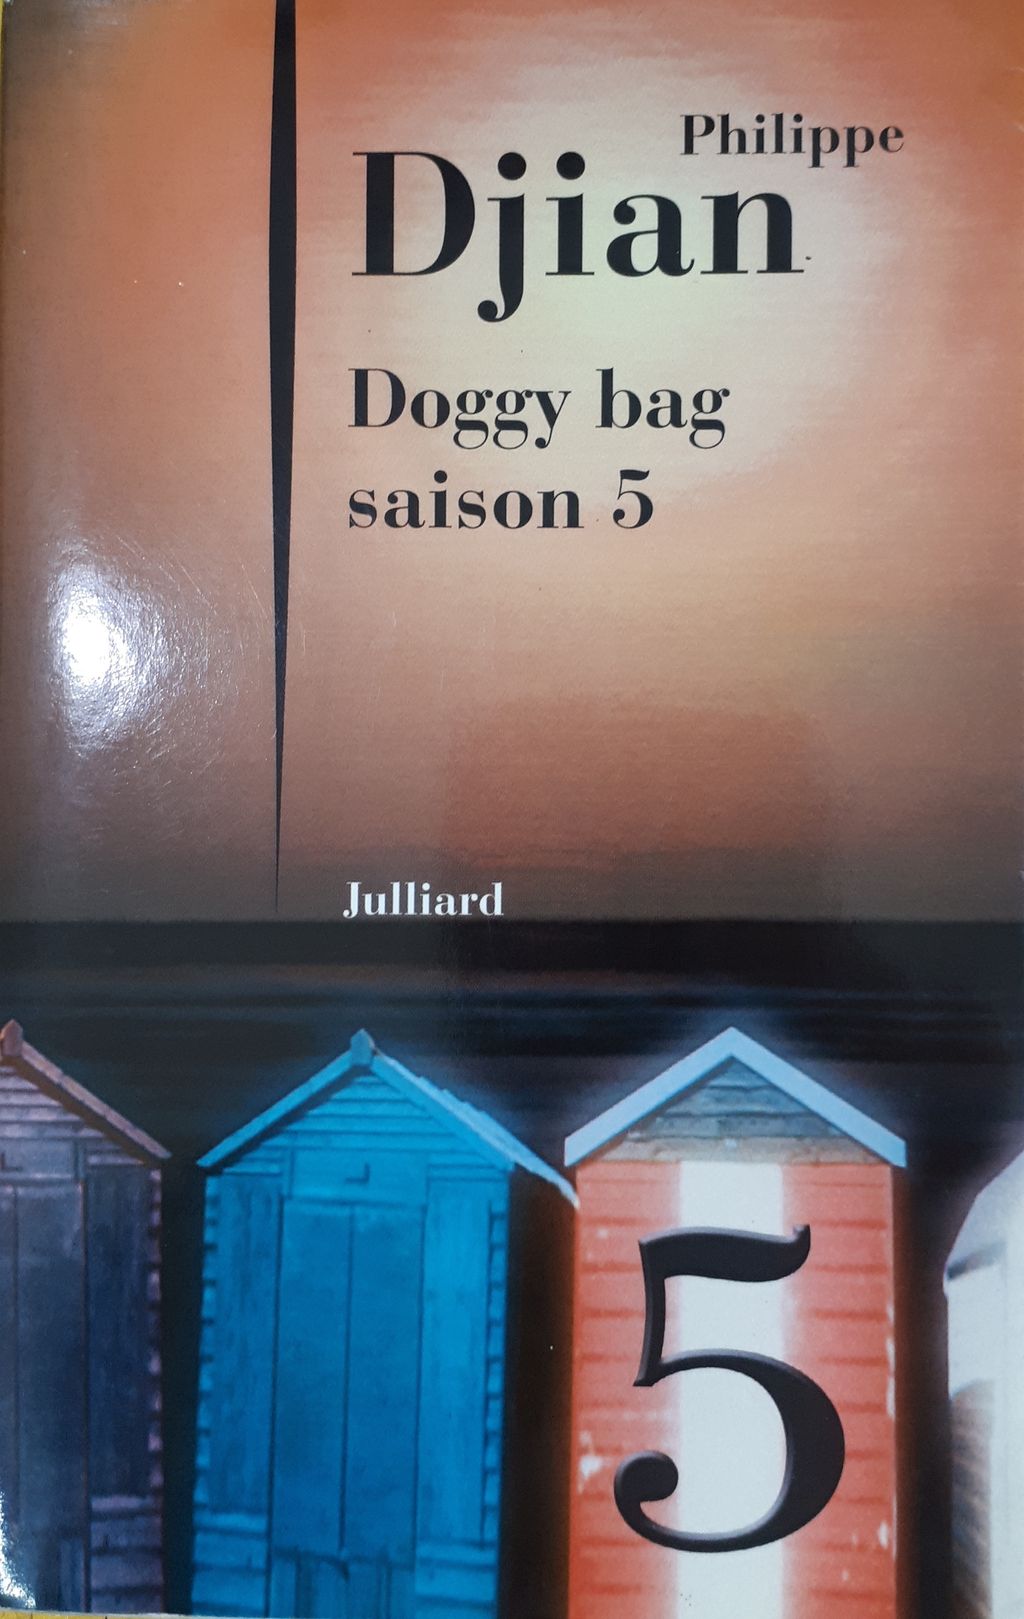 doggy bag soison 5.jpg